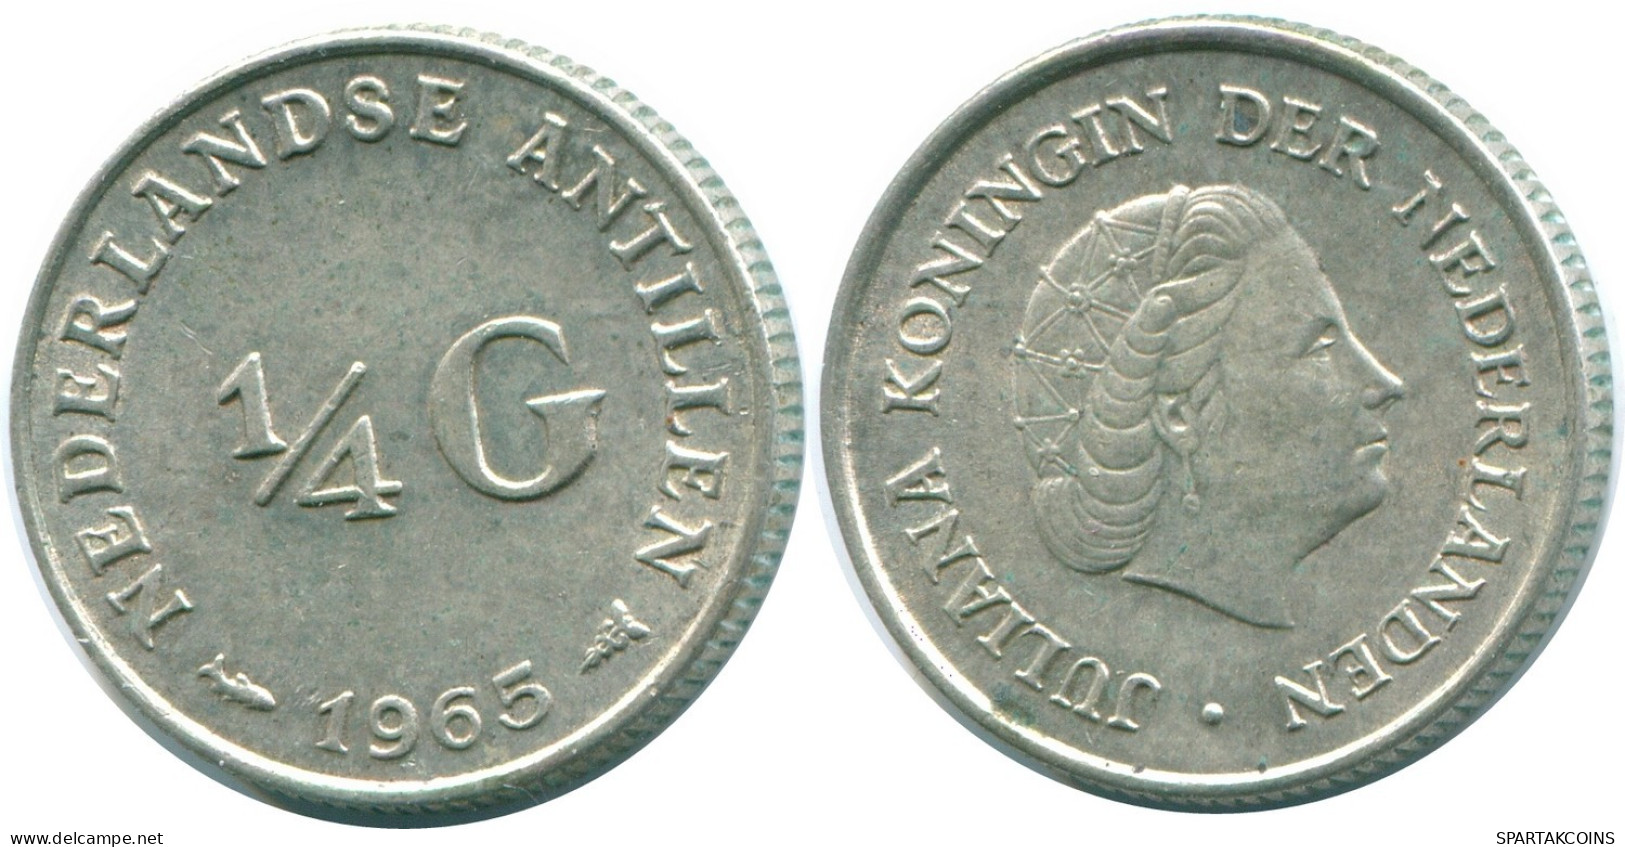 1/4 GULDEN 1965 NIEDERLÄNDISCHE ANTILLEN SILBER Koloniale Münze #NL11275.4.D.A - Niederländische Antillen